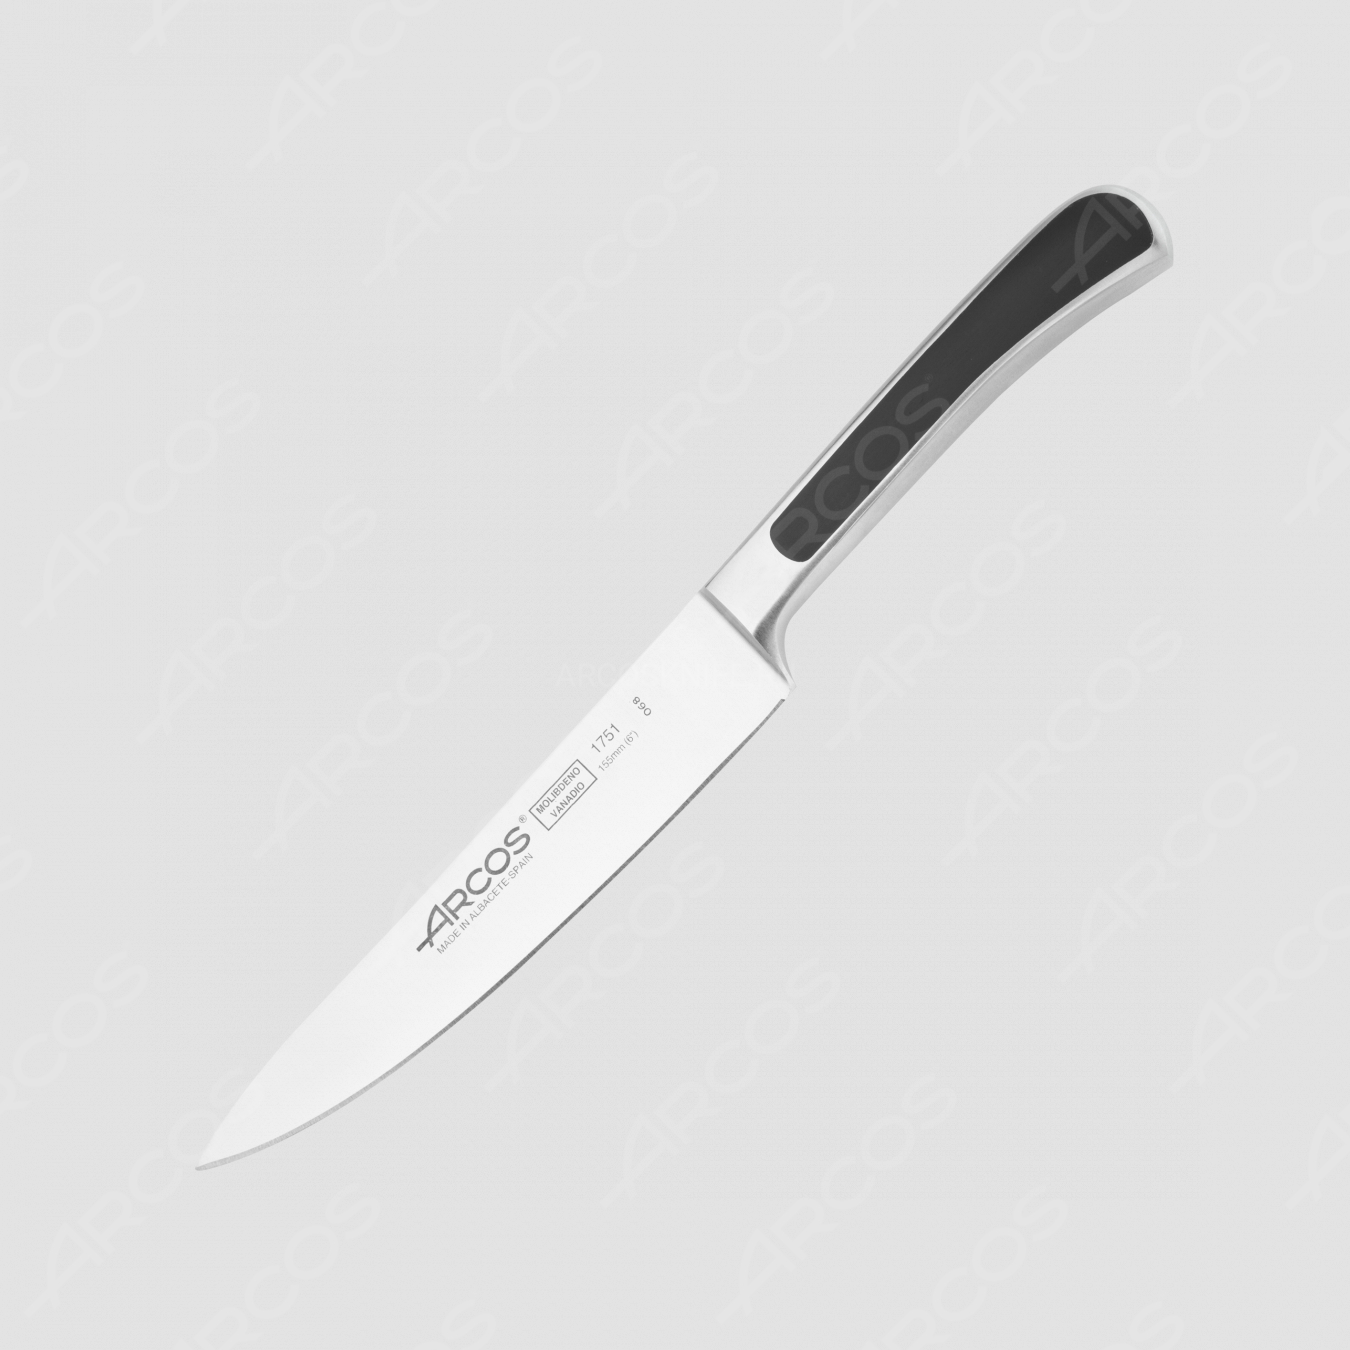 Нож кухонный 15 см, серия Saeta, ARCOS, Испания